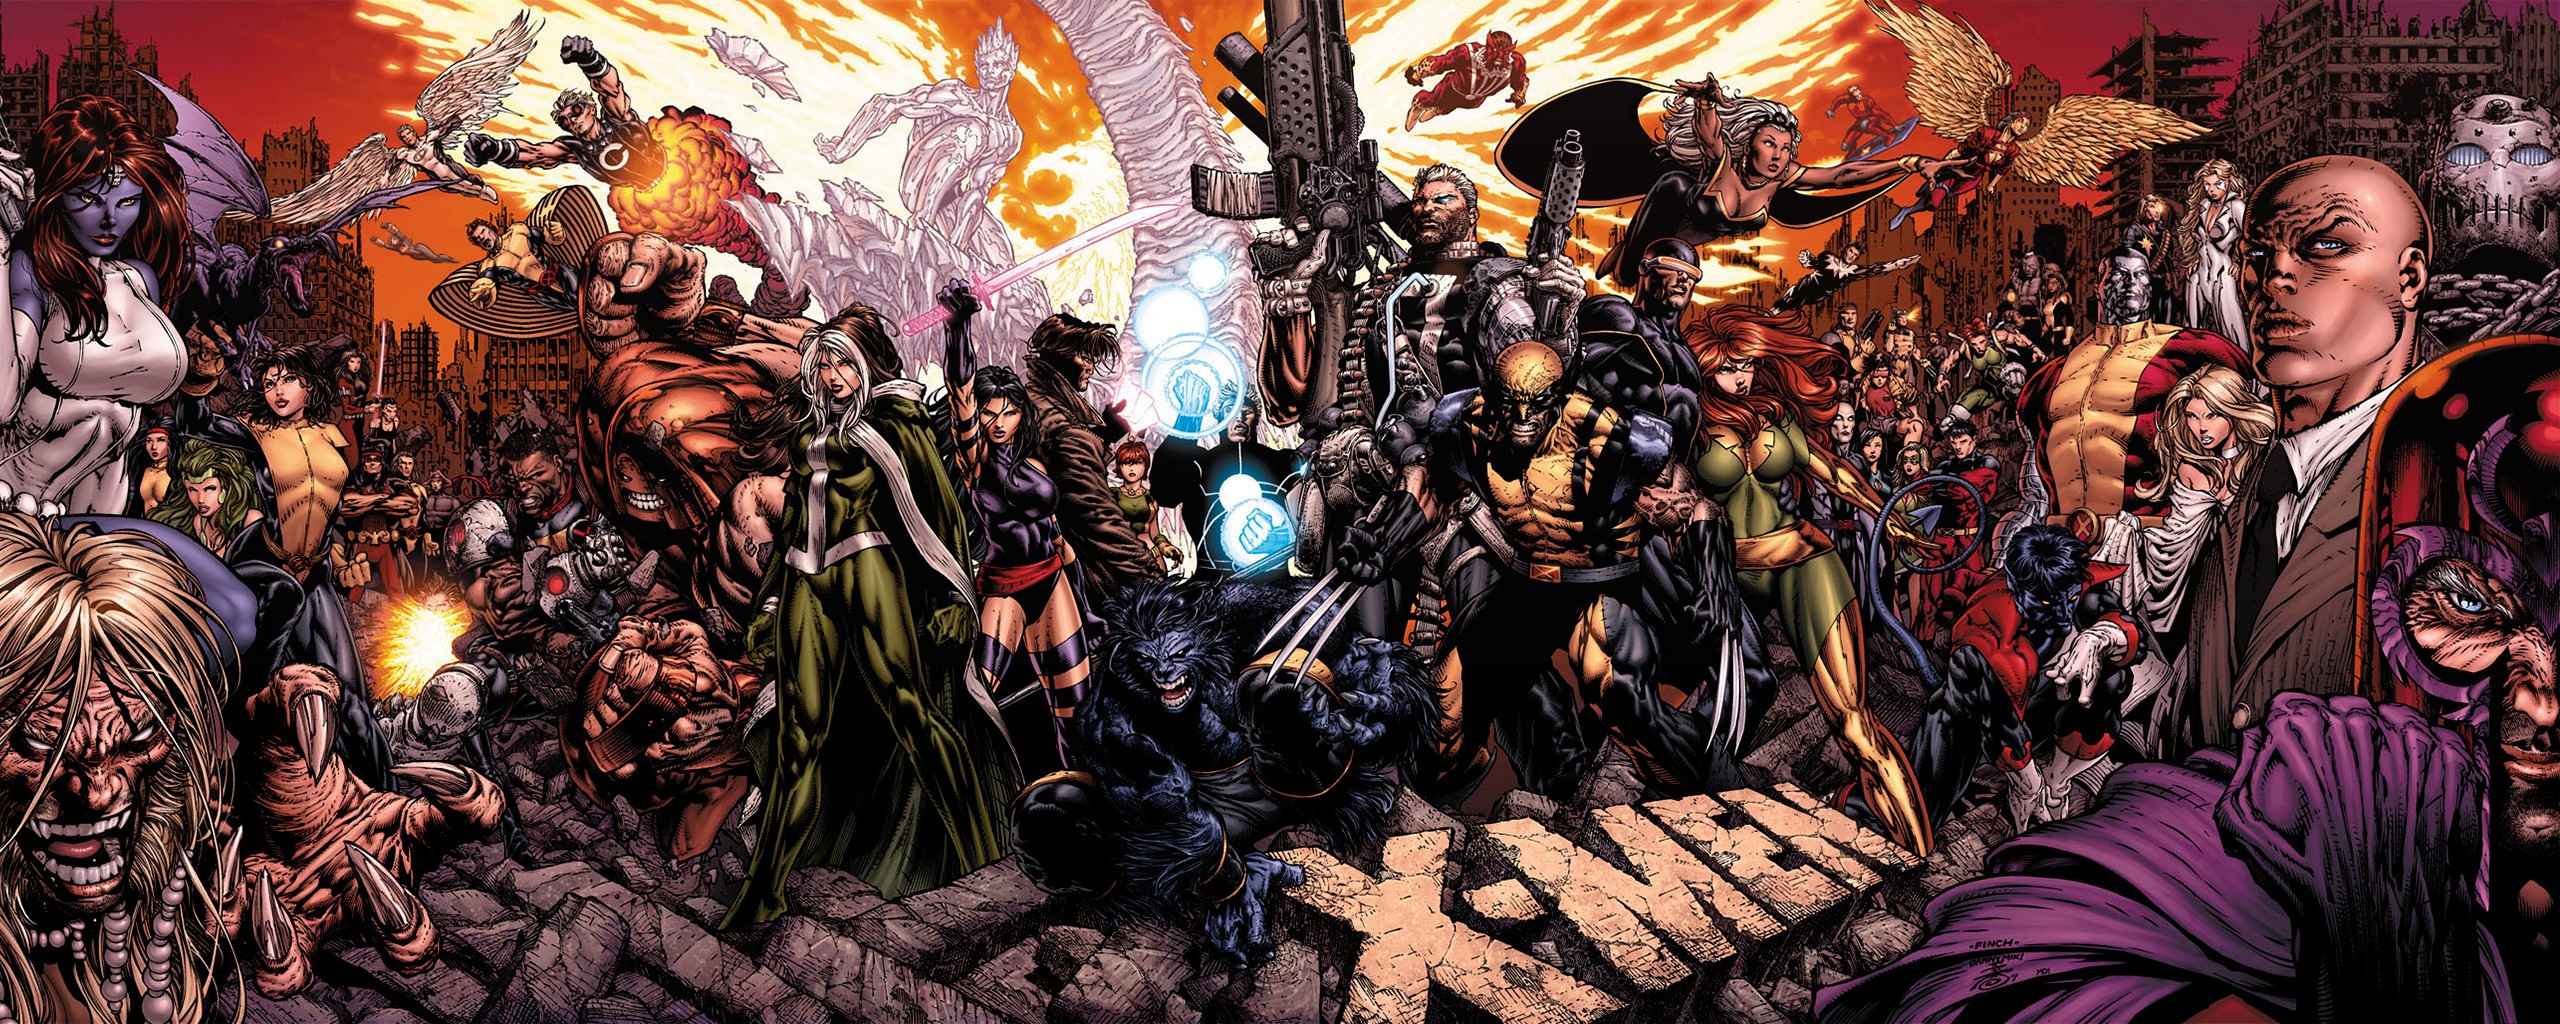 X Men, Comics, Comic Books, Marvel Comics Wallpapers HD / Desktop